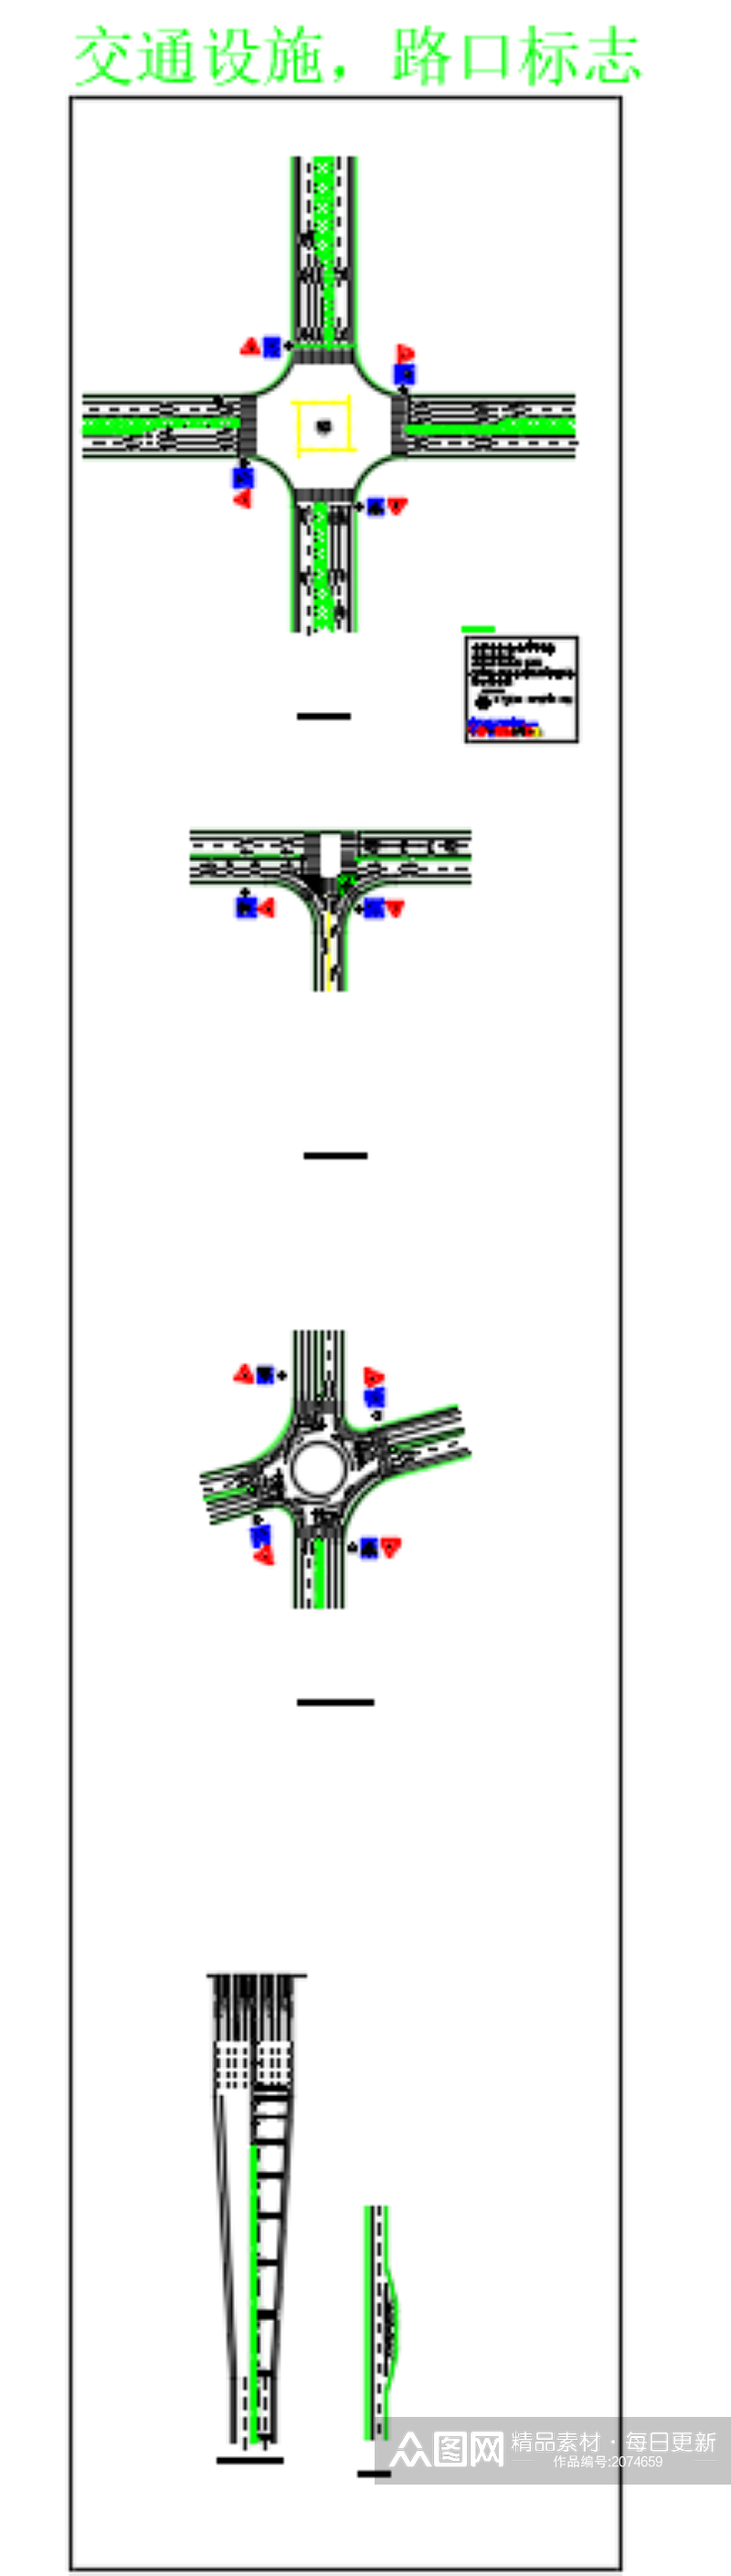 停车场图例和路口标志cad素材